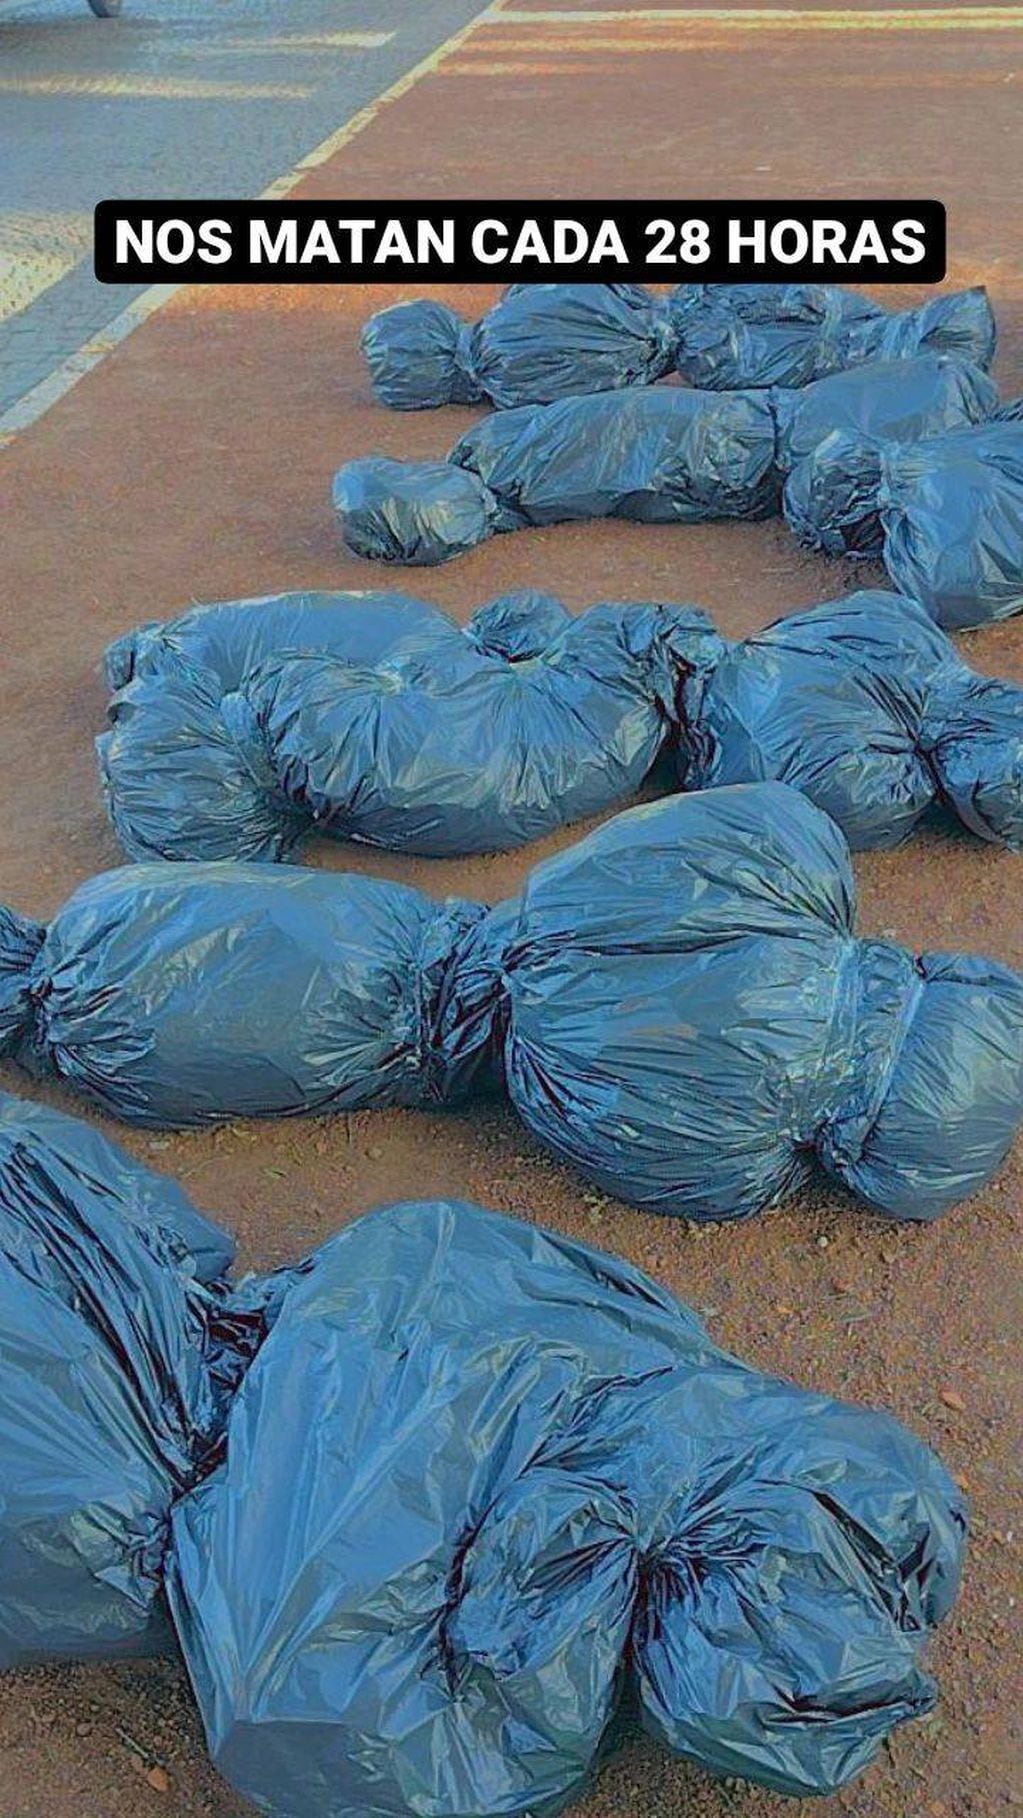 Bolsas que se asemejaban a cadáveres en la marcha de "Ni una menos" en Rafaela